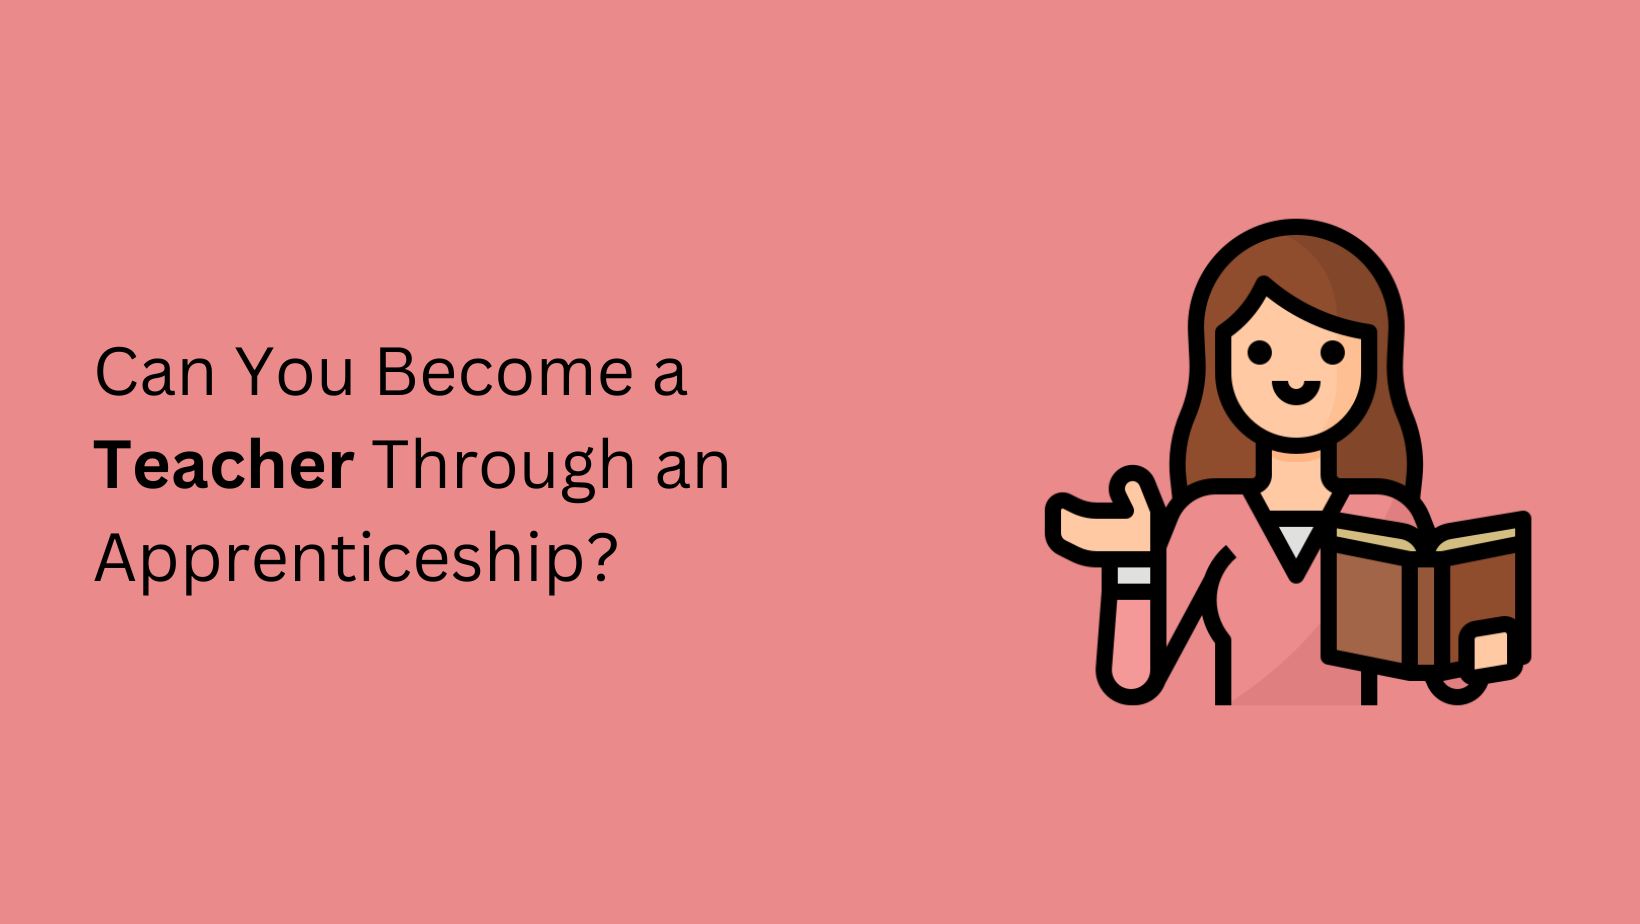 Can You Become a Teacher Through an Apprenticeship